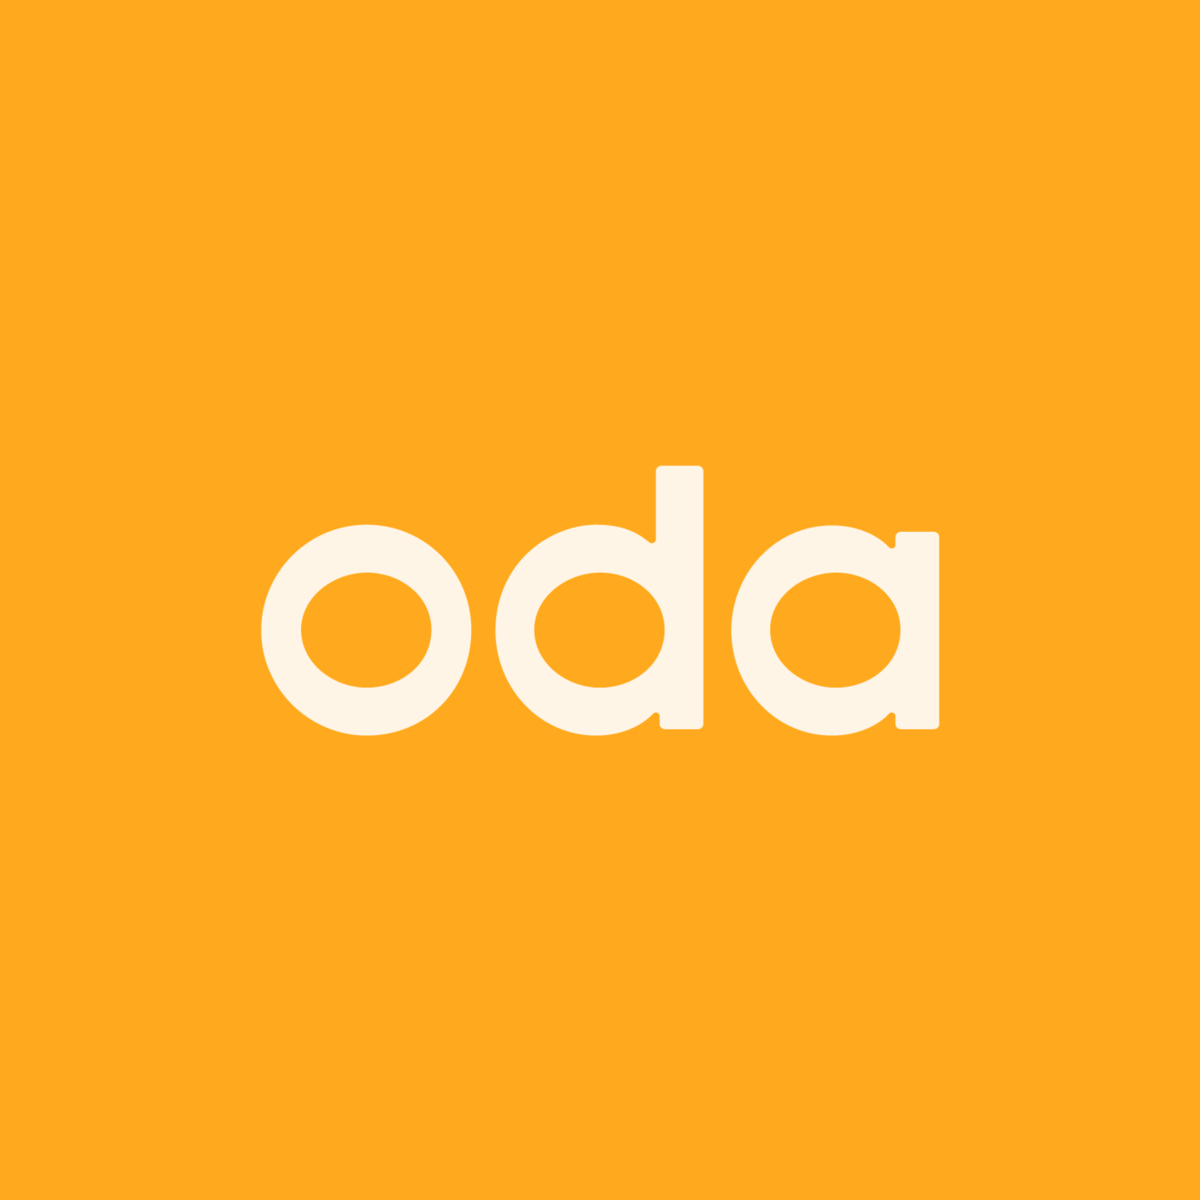 Oda (previously Kolonial)'s logo